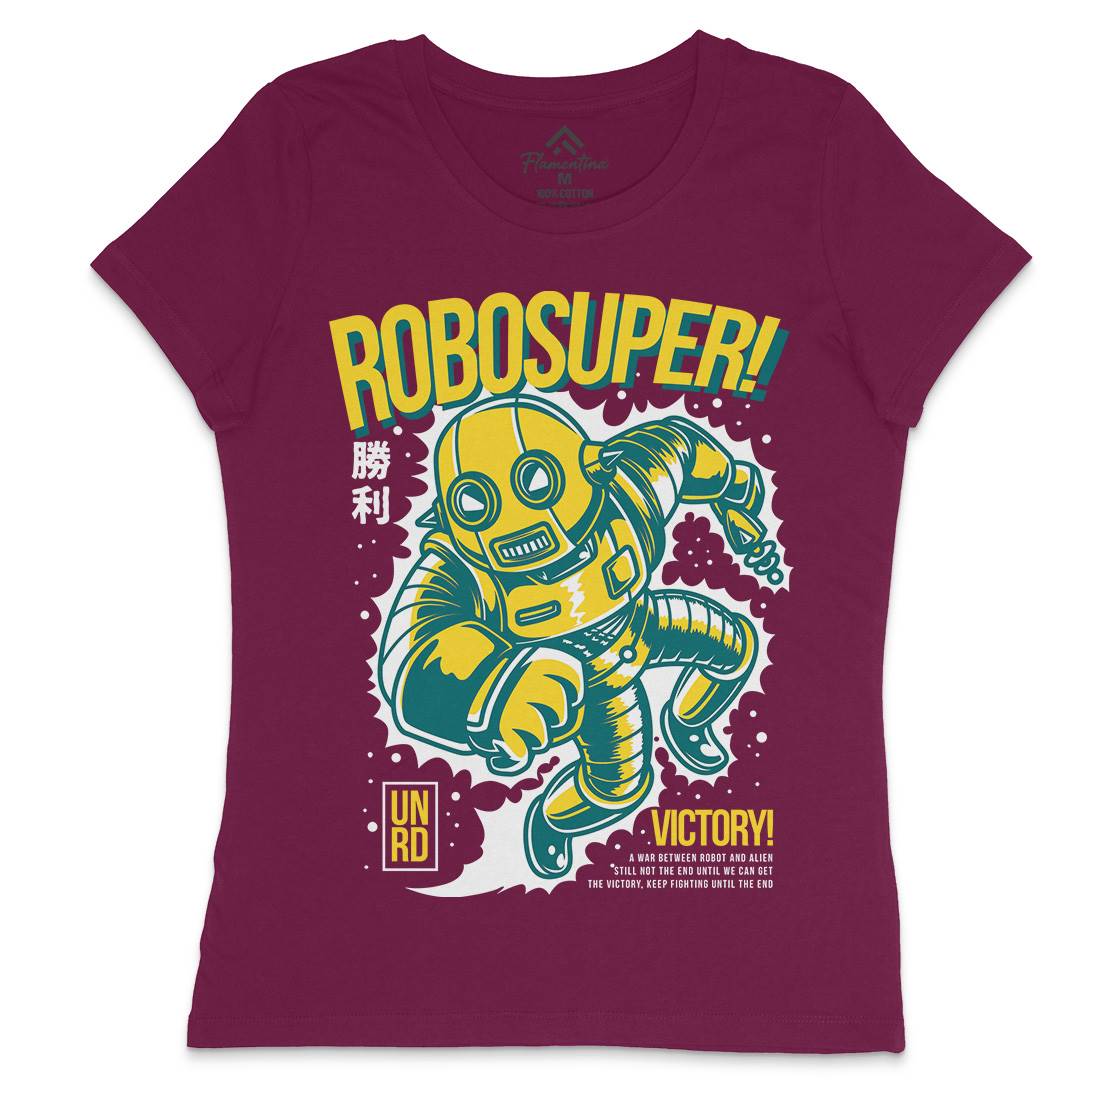 Super Robot Womens Crew Neck T-Shirt Space D802